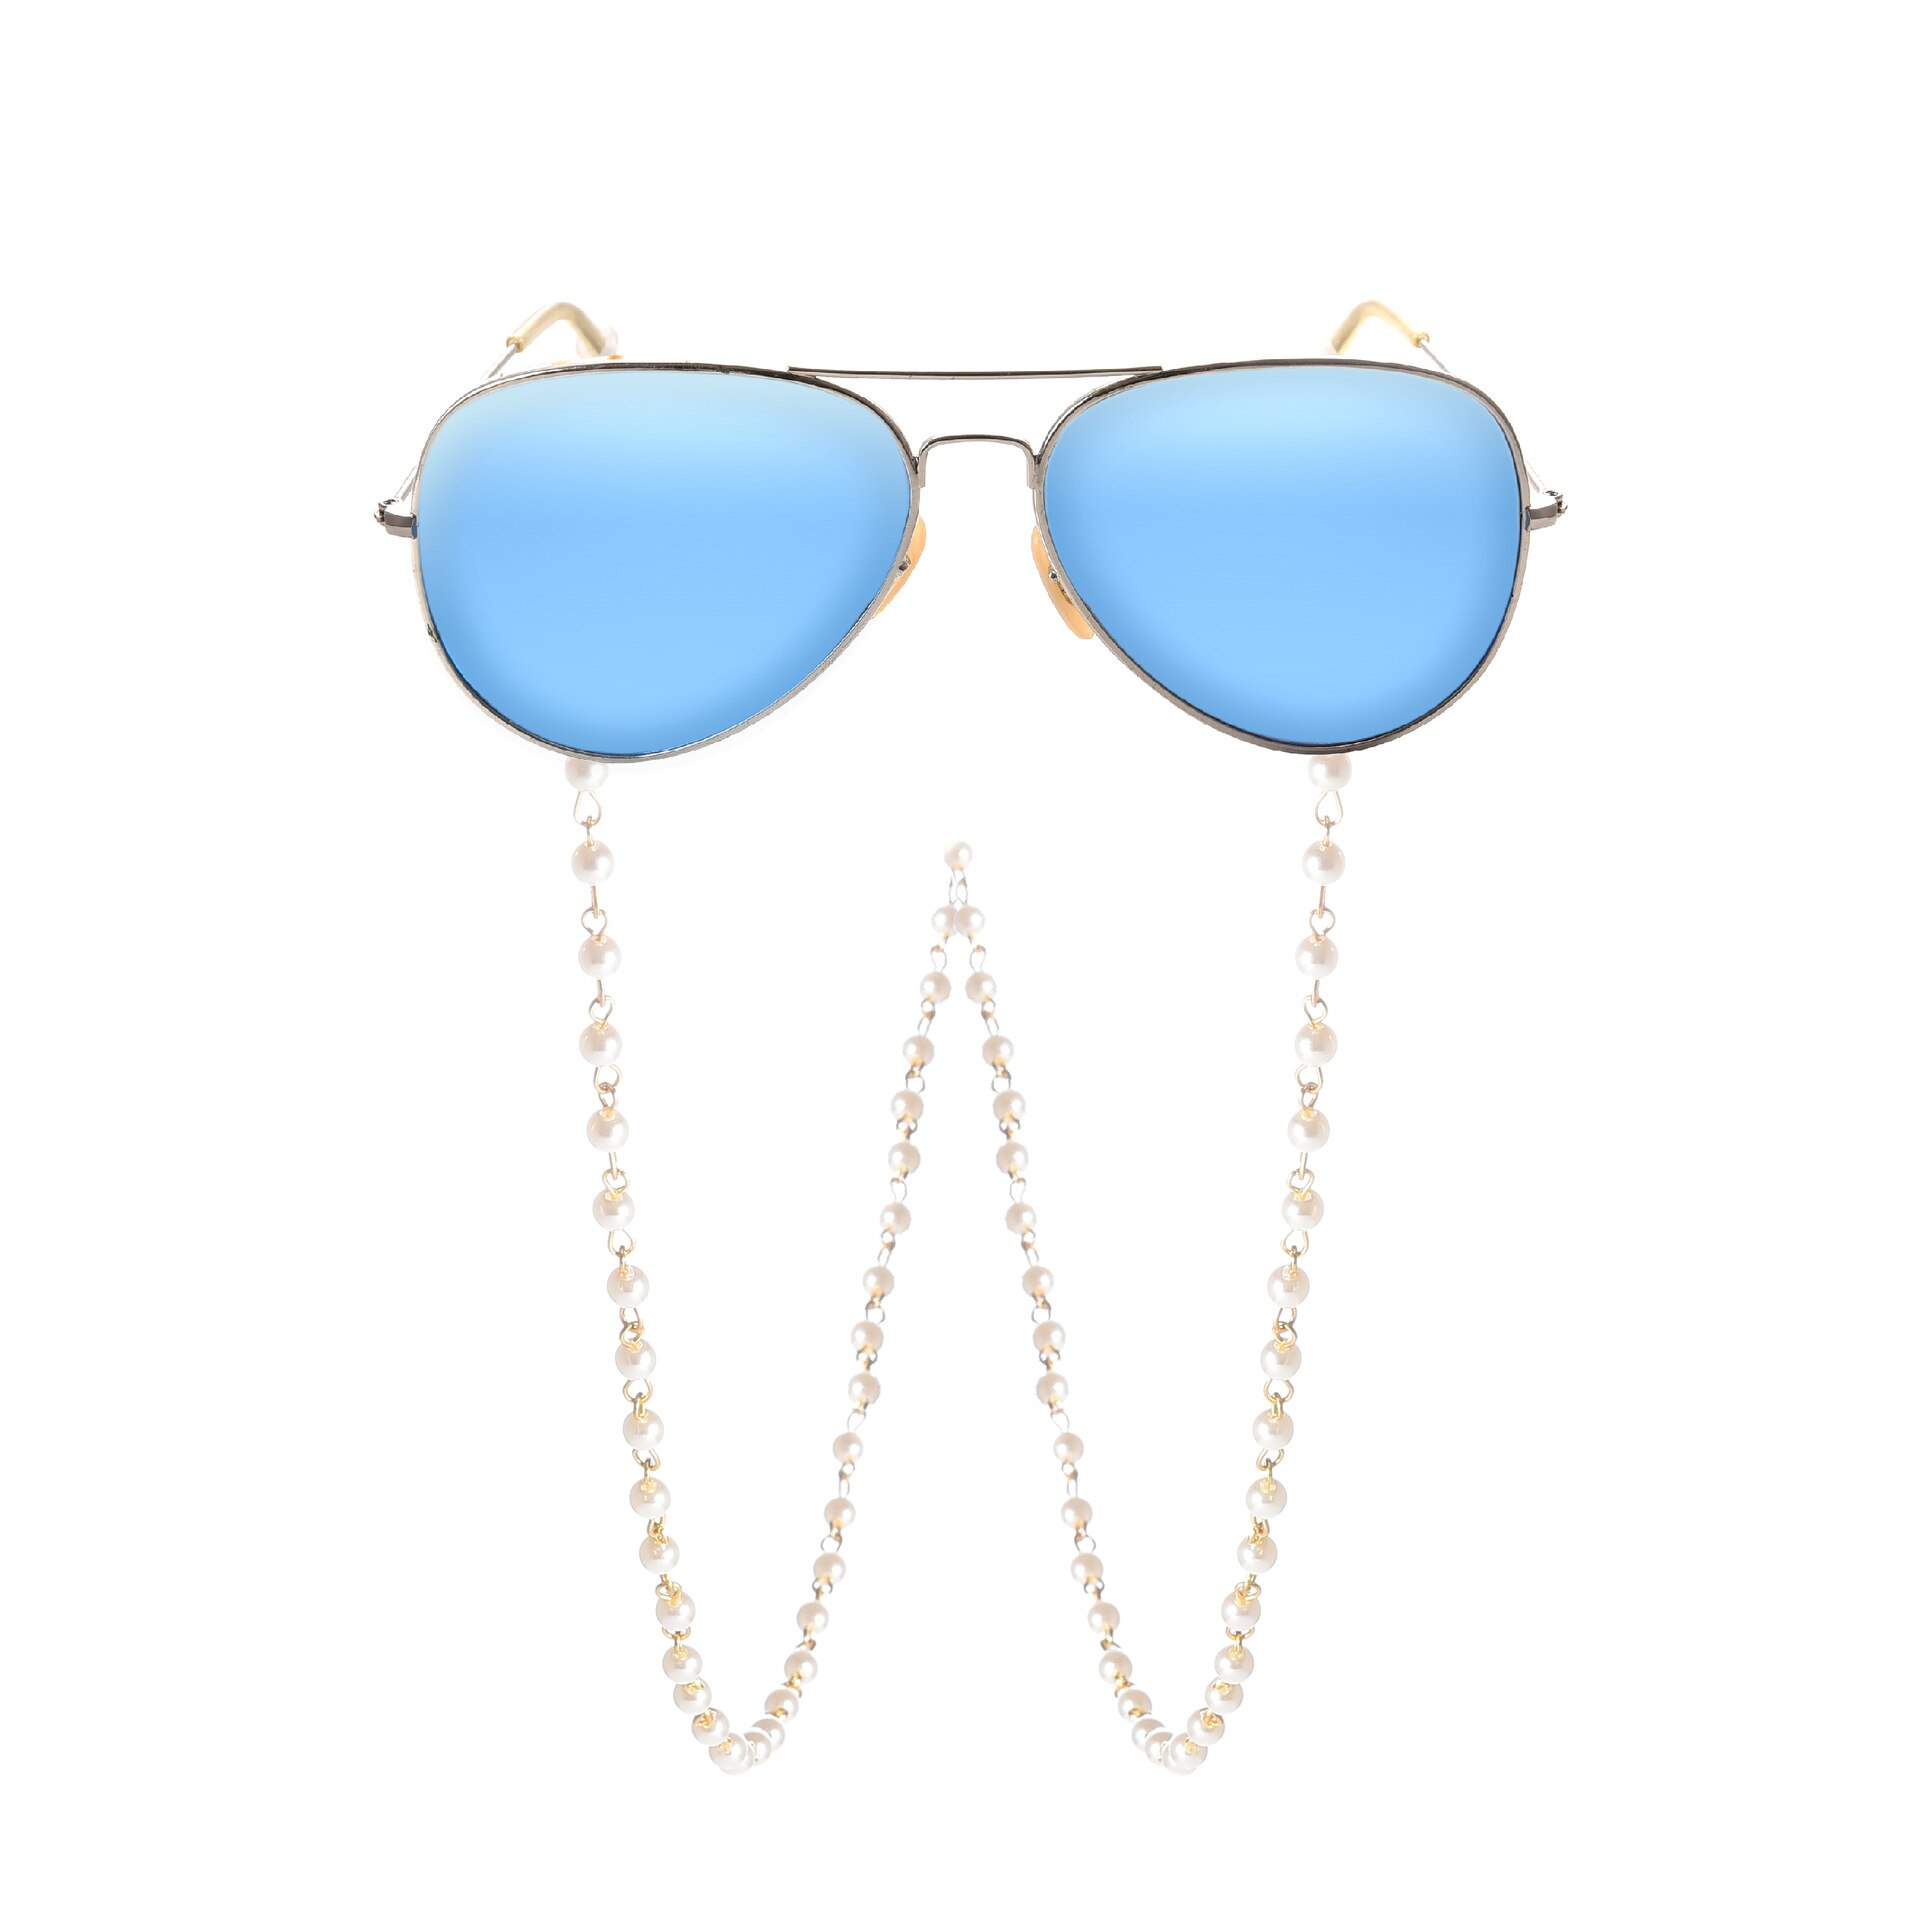 Lunettes chaîne pour femmes avion gland perles lanière lunettes sangle lunettes de soleil cordons décontracté lunettes accessoires DJ-167